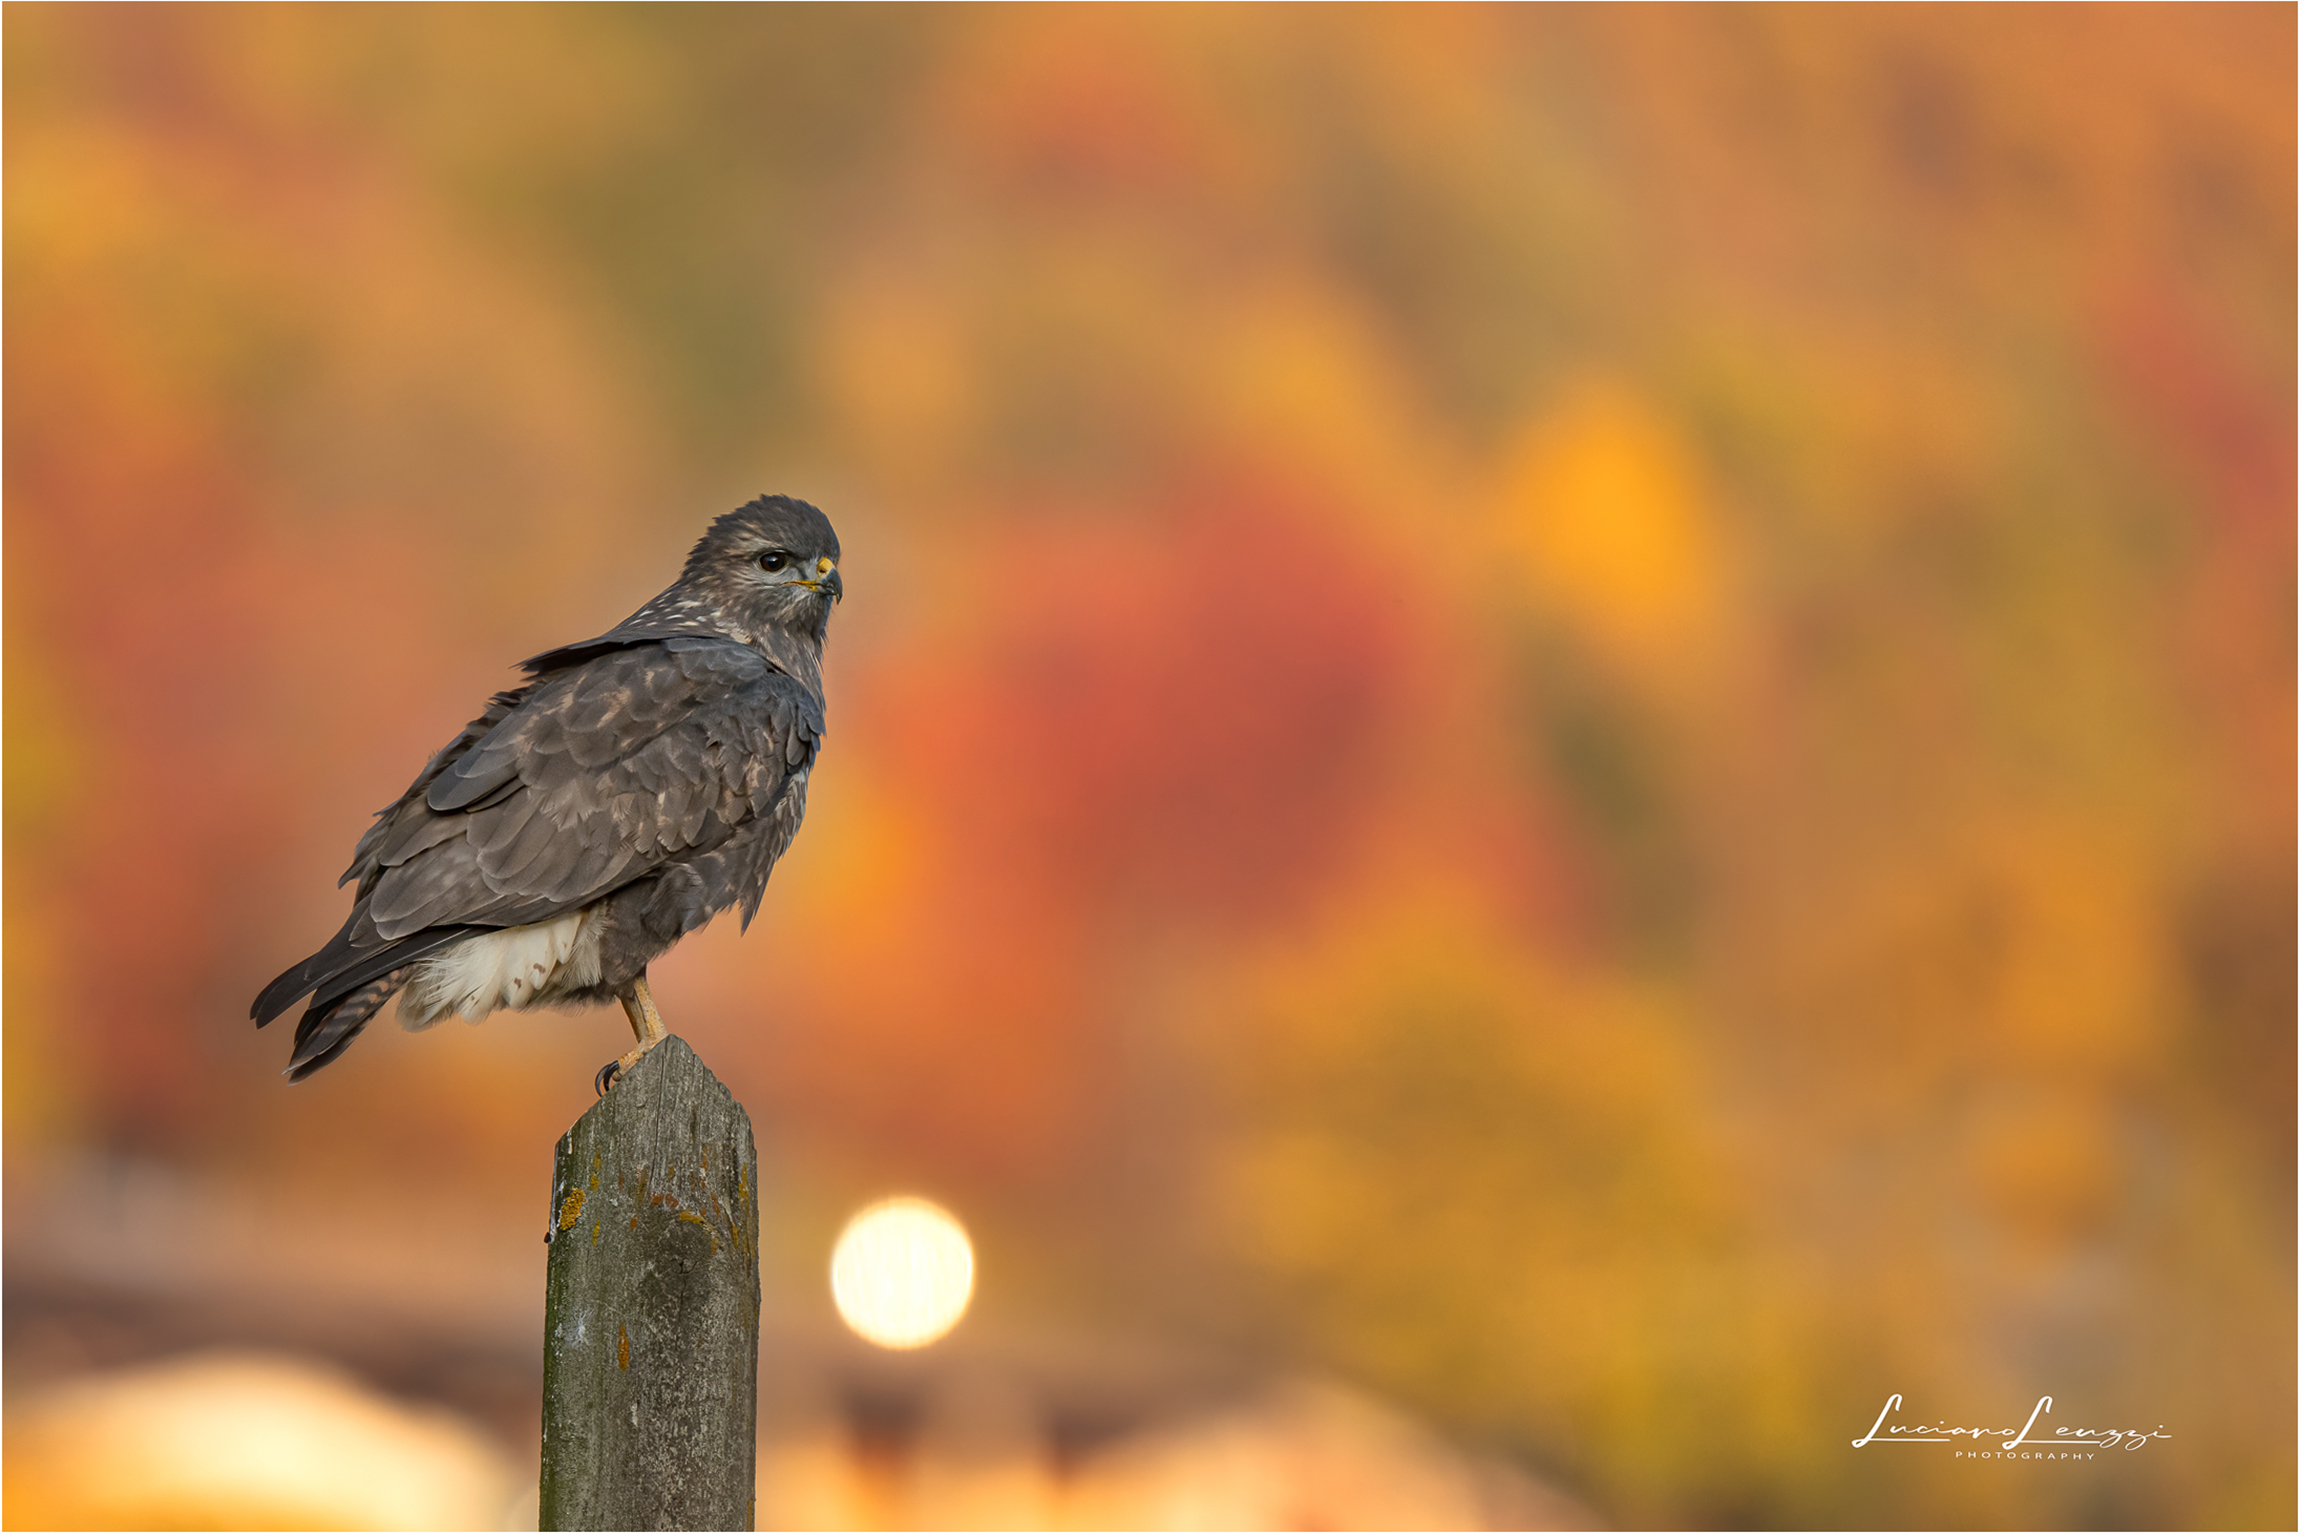 The last autumn buzzard...